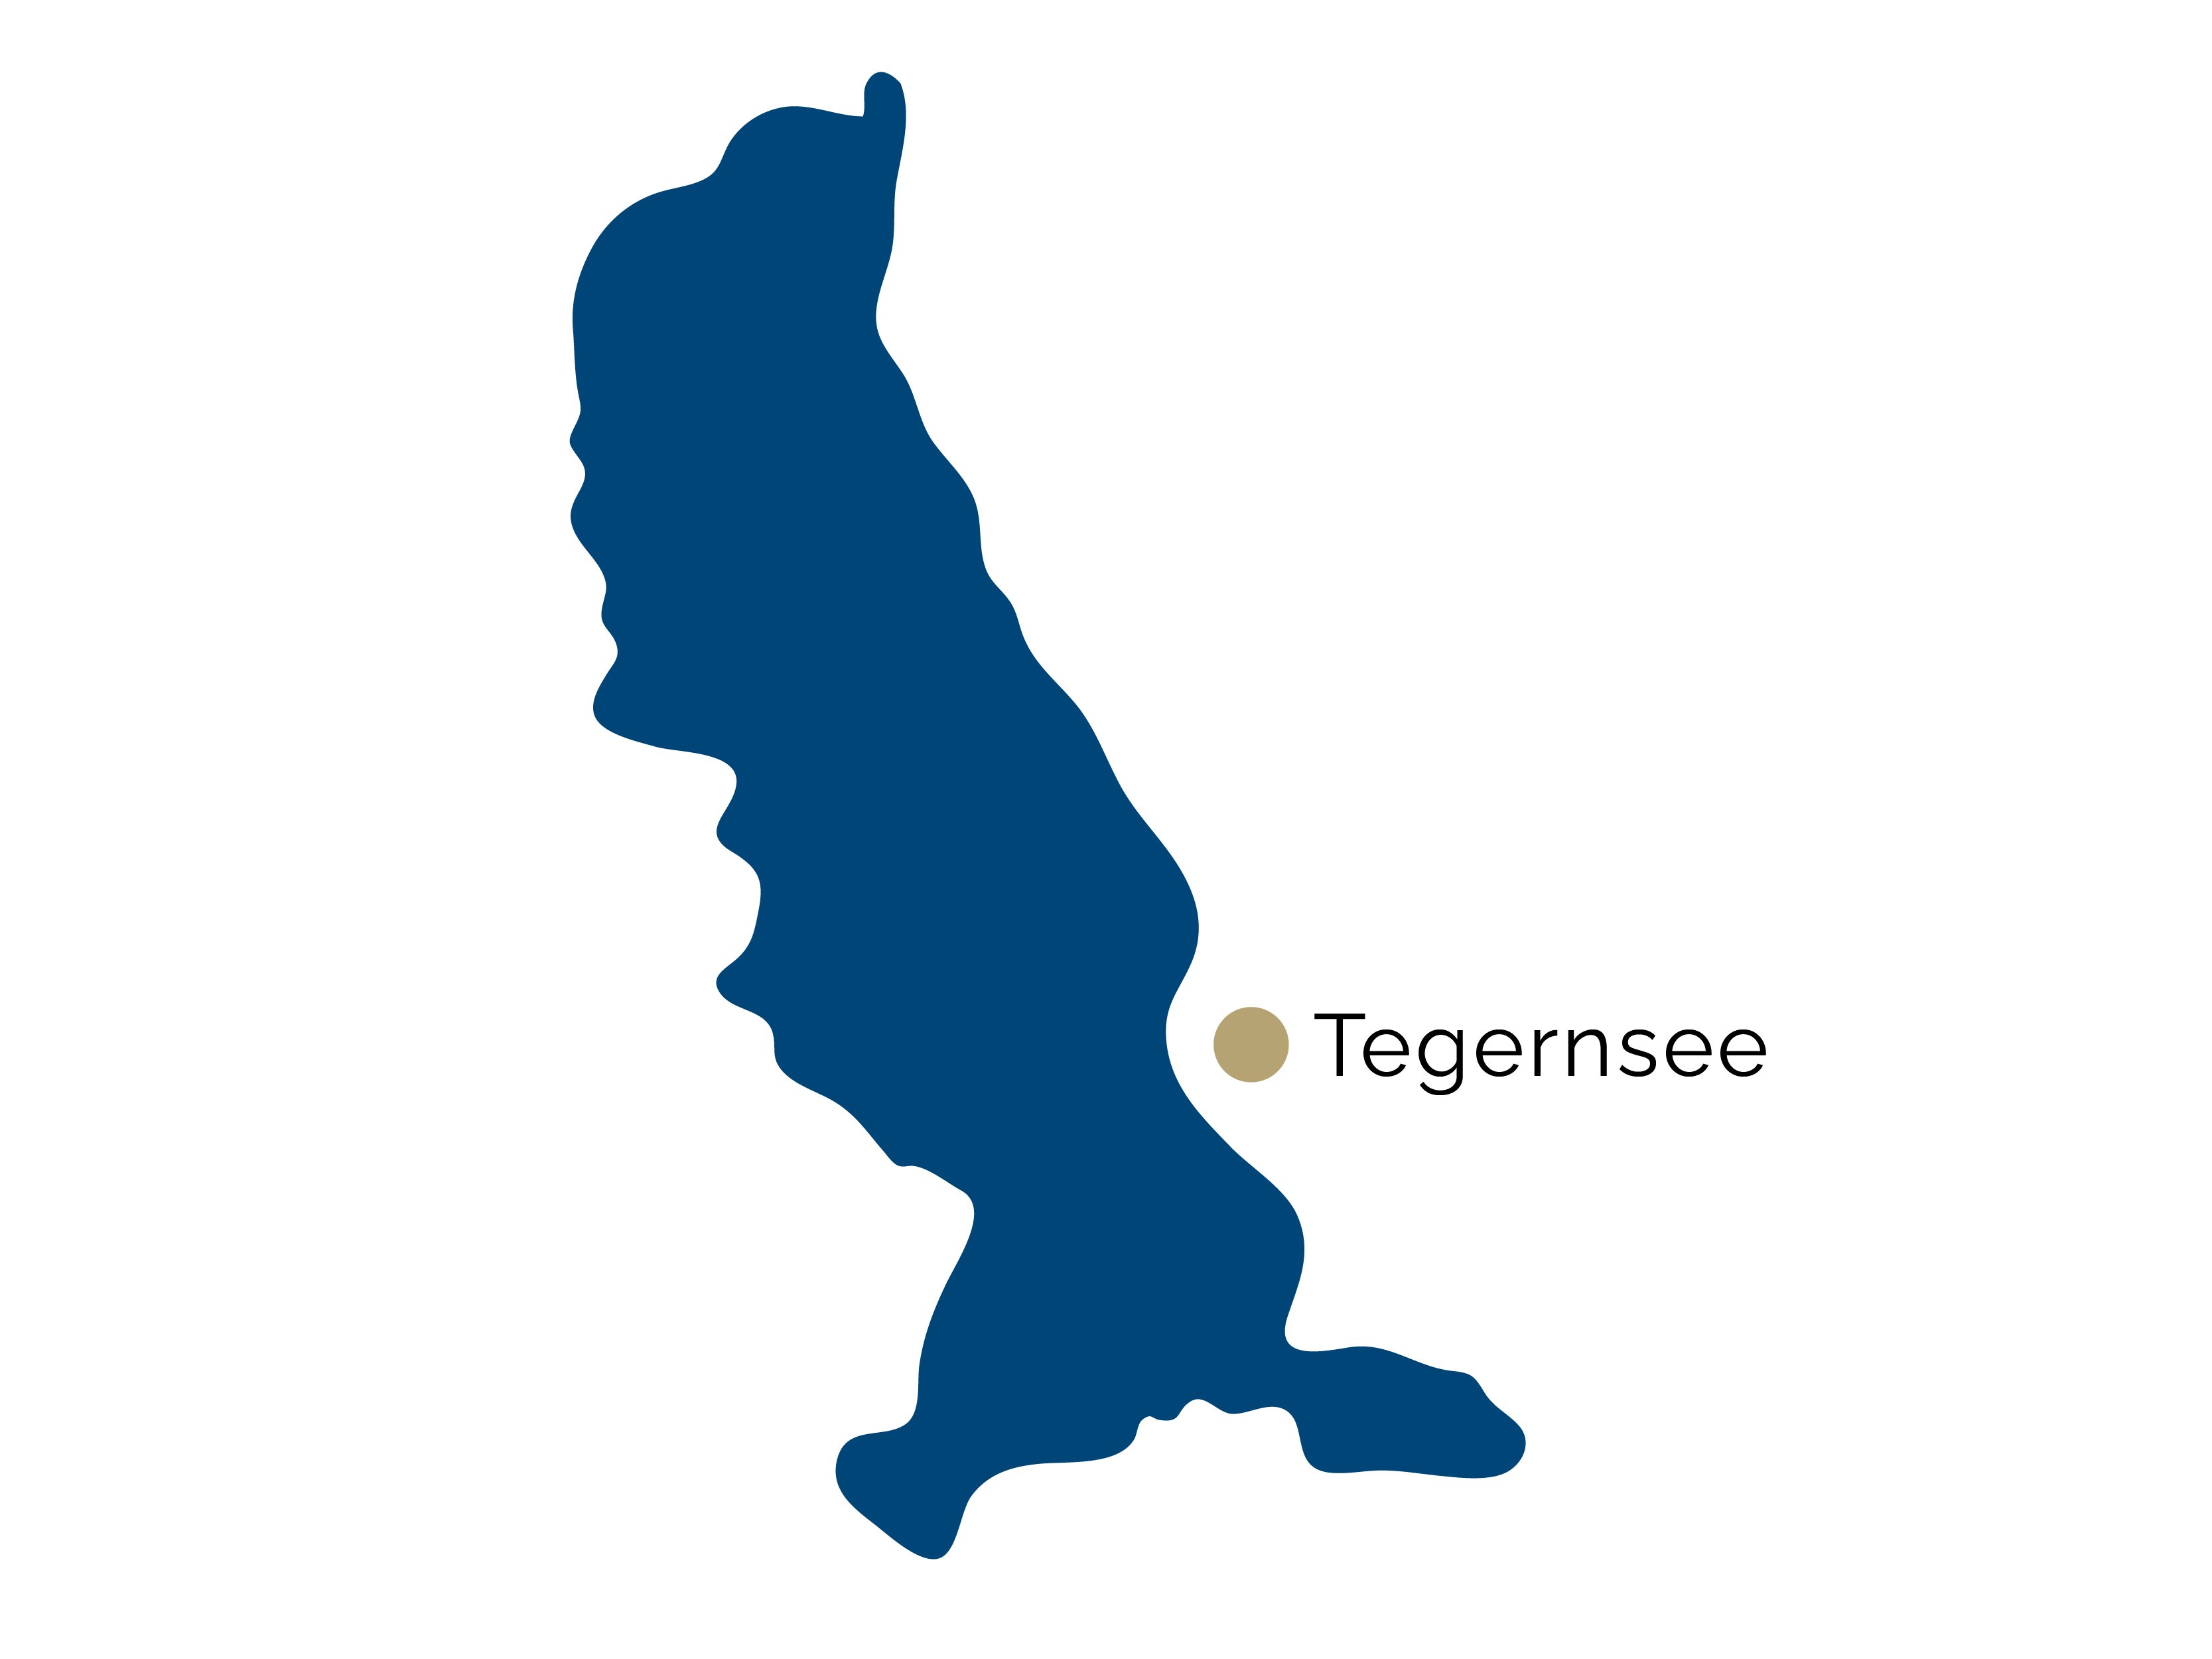 Karte von der Region Tegernsee